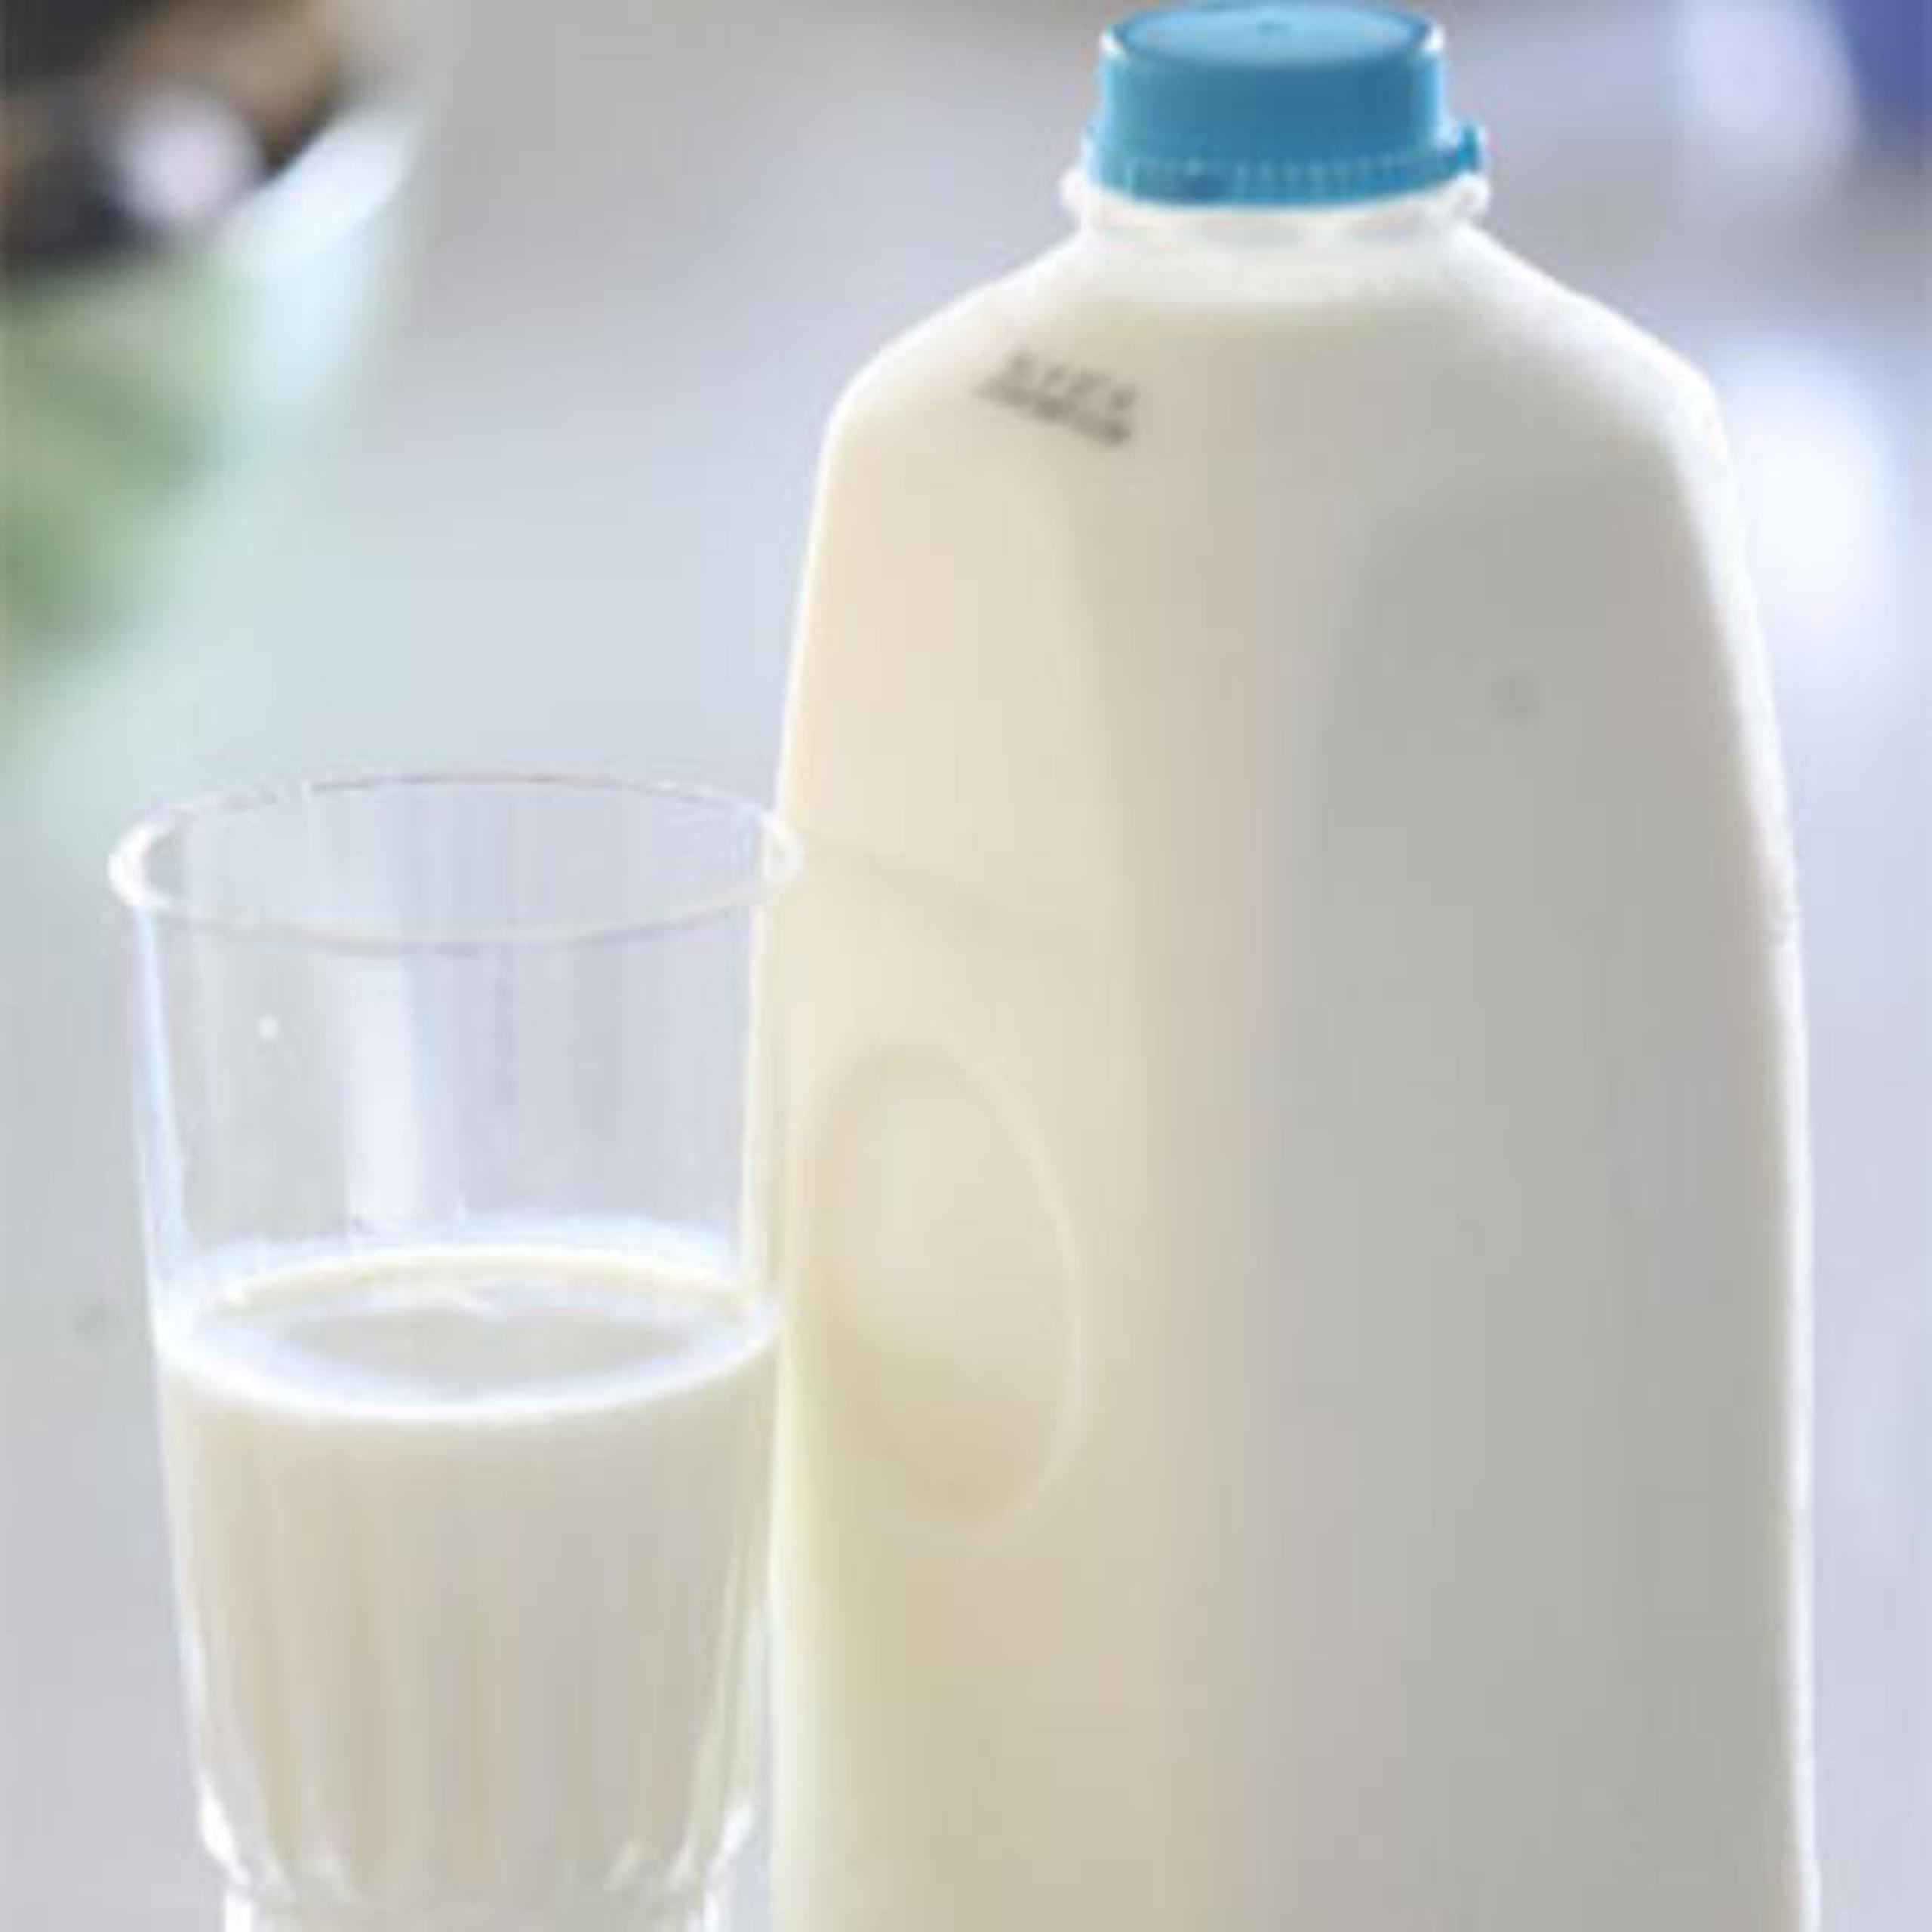 Directivos de Tres Monjitas aseguraron que el nuevo producto responde a las inquietudes de los consumidores de tener una leche fresca más duradera. (Archivo)